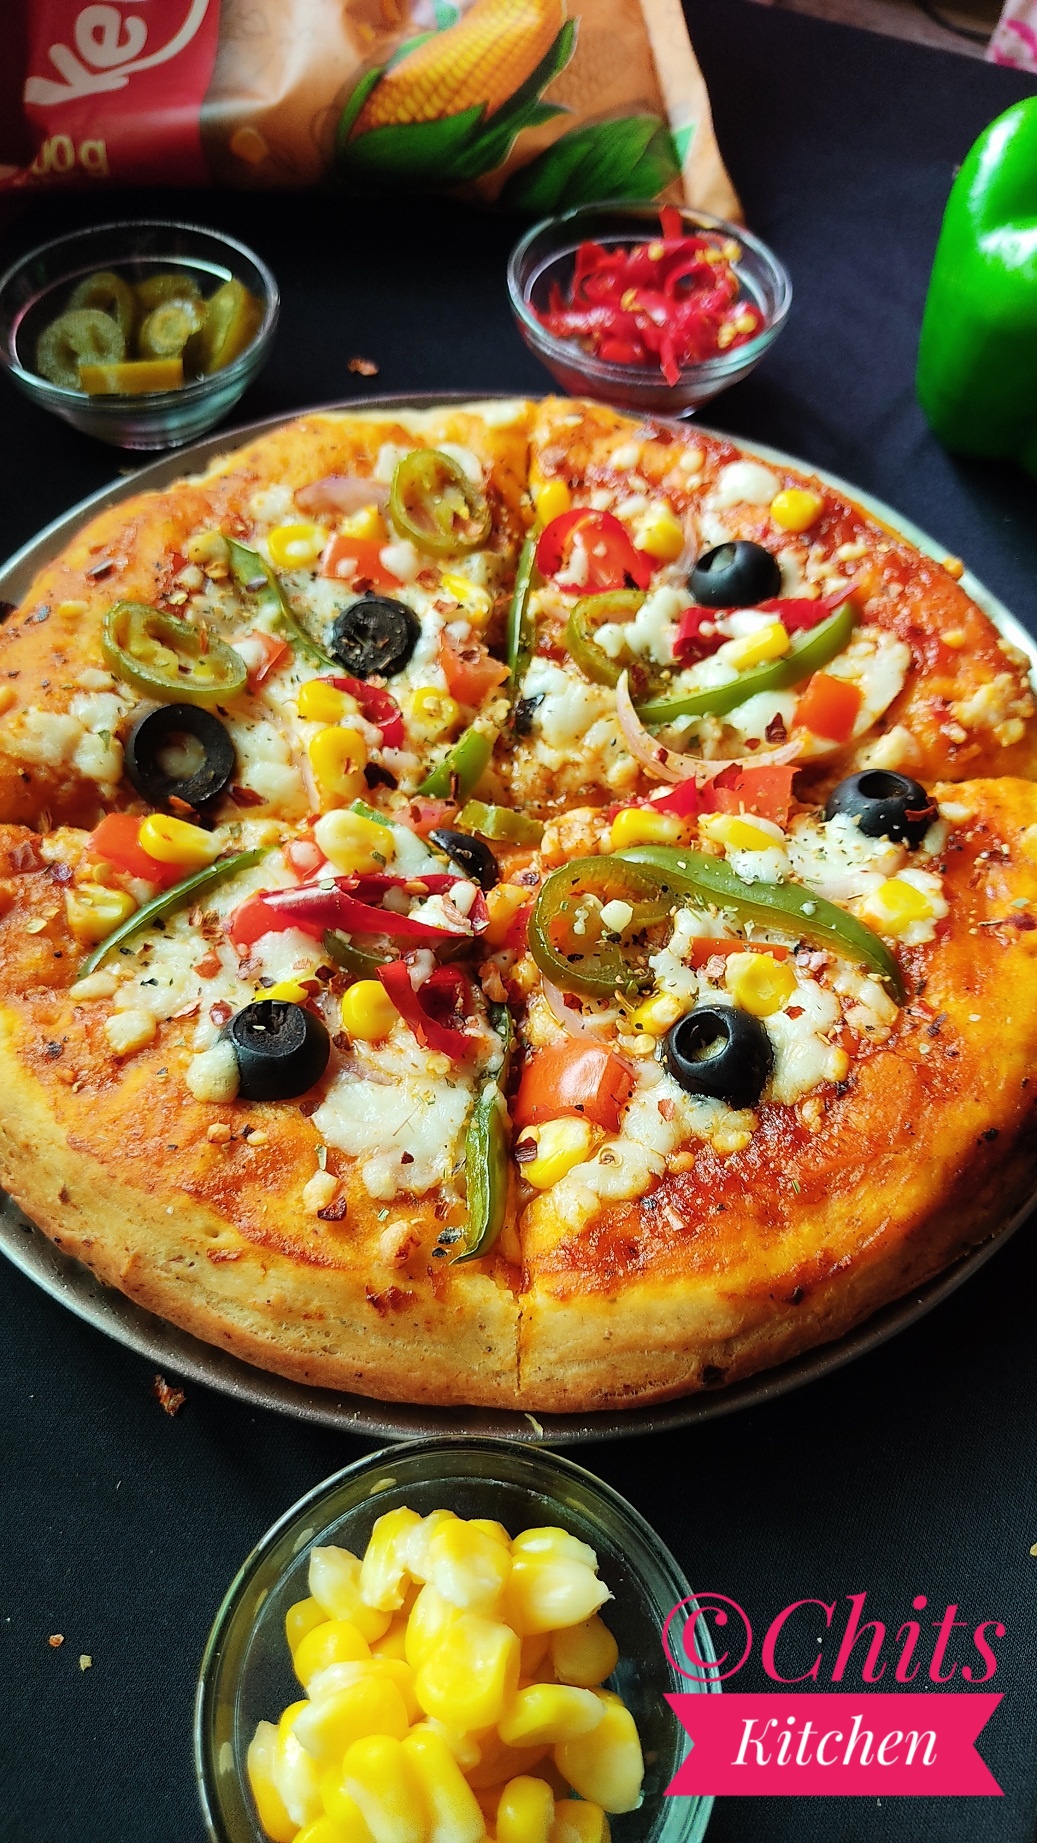 Pizza Recipe / Veg Pizza Recipe / Homemade Pizza